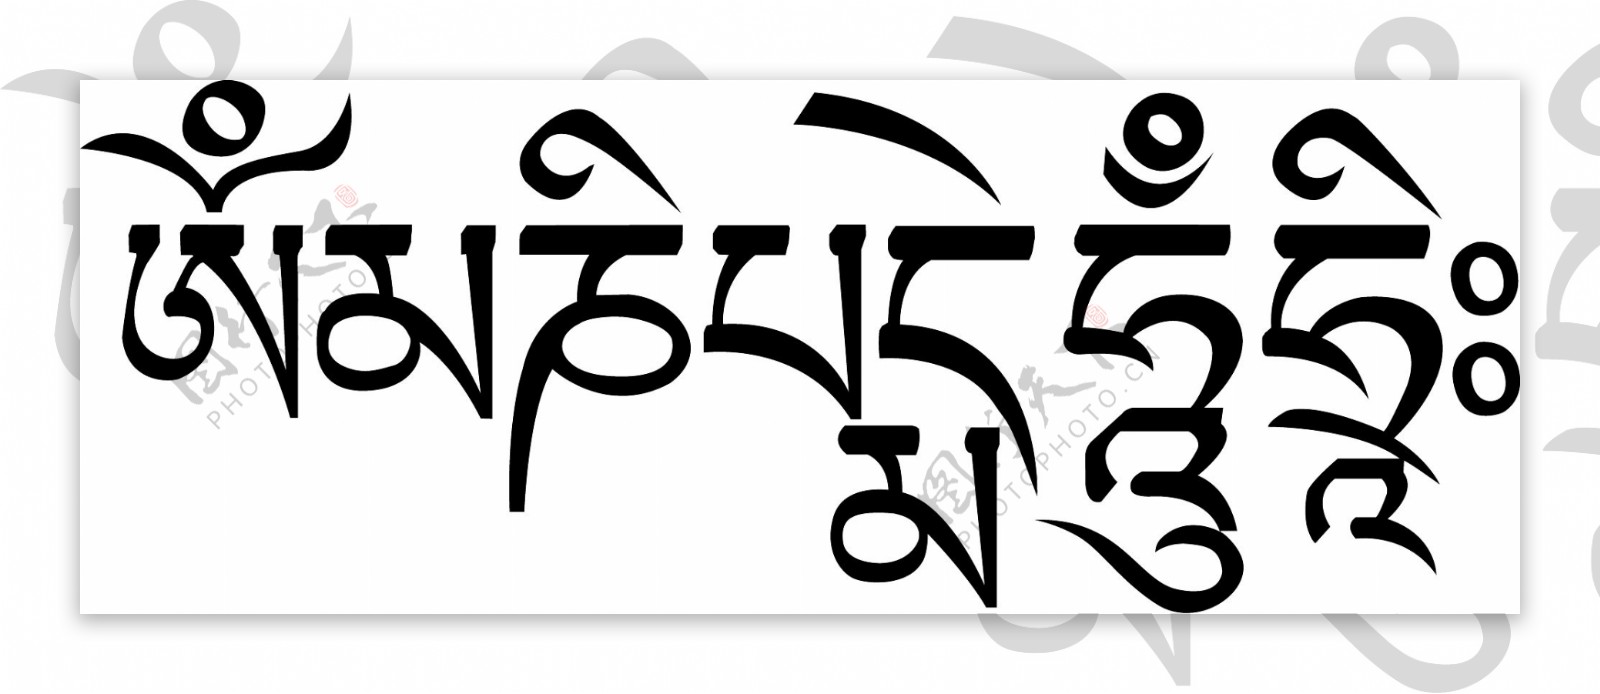 六字真言藏文图片